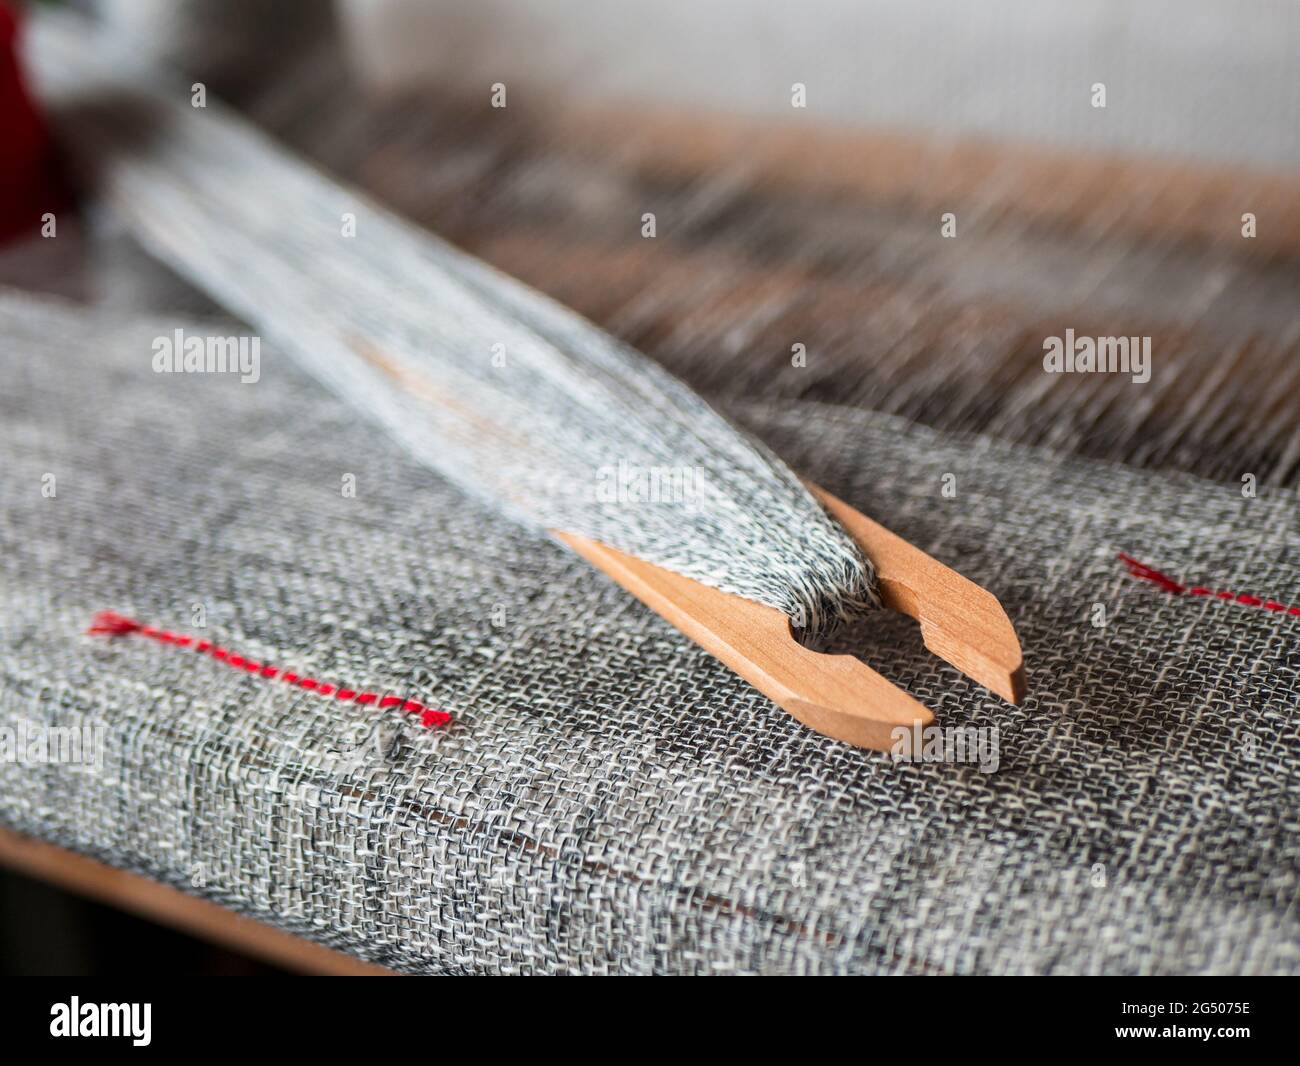 Une navette en bois avec du fil marbré est sur le métier à tisser à la main. Tissu gris tissé avec rayures rouges Banque D'Images